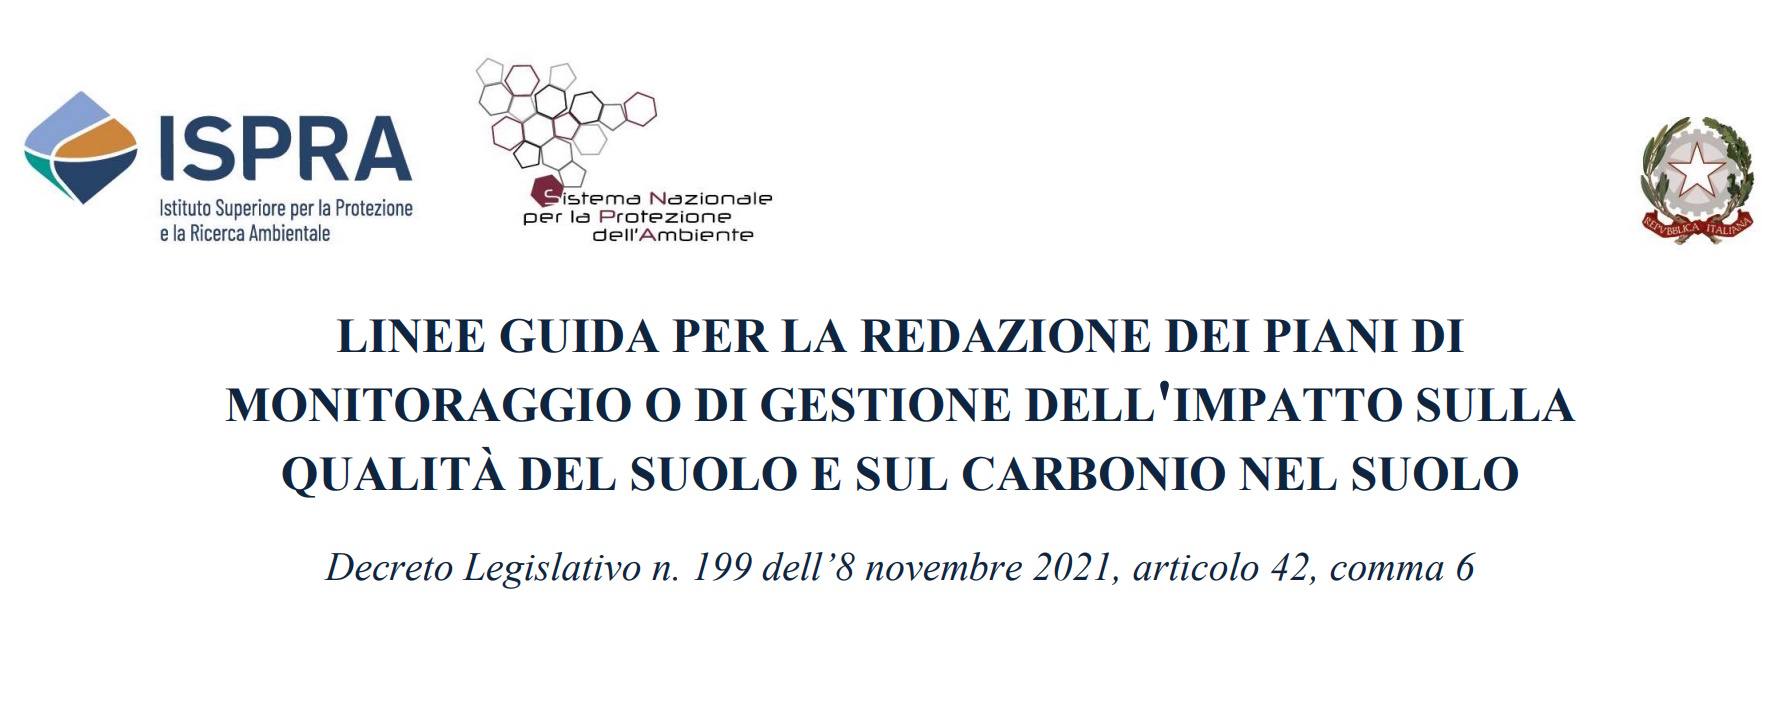 carbonio nel suolo Linee guida qualità del suolo. Gazzetta Ufficiale Serie Generale n. 64 del 16/03/2023. Approvazione linee guida ISPRA.